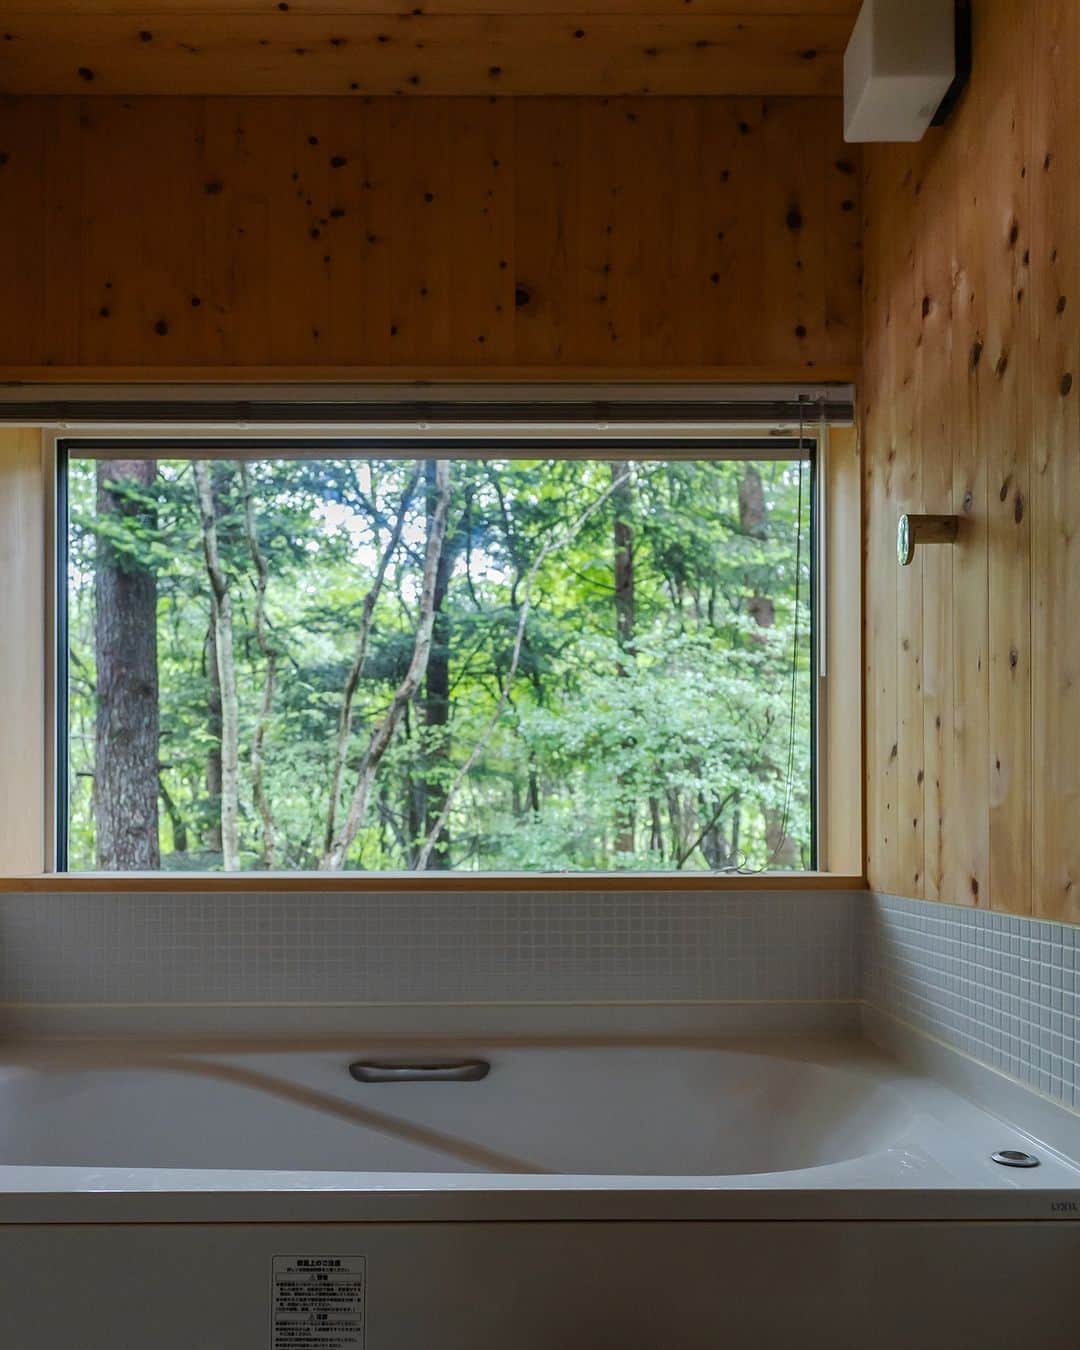 美し信州建設のインスタグラム：「お風呂で楽しむ森林浴  森の中の静かな別荘地。 お風呂の時間も、森を近くに感じられるようにハーフユニットバスを採用。 大きなFIX窓は遠くまで連なる木々の景色を絵のように縁取ります。  設計：伊礼智設計室  【i-works1.0 森の中で暮らす】 --------------------------------------------  信州の街に、自然に、人に寄り添うロングライフデザインの住まい。 美しい本物の木の住まいをお届けします。  A Long Life Design home that harmonizes with nature and people in the towns of Shinshu. We deliver homes crafted from exquisite, authentic wood – residences that truly embrace the essence of nature and community.  -------------------------------------------- ▼最新のイベント情報や家づくりの事例は @utukusinshuu のURLからご覧いただけます。   #軽井沢町 #i_works #i_works_project #伊礼智 #伊礼智設計室 #ハーフユニットバス #FIX窓 #長野県工務店  #上田市工務店 #iworks #iworksproject #美し信州建設 #木の家 #自由設計 #注文住宅 #建築士とつくる家 #丁寧な暮らし」